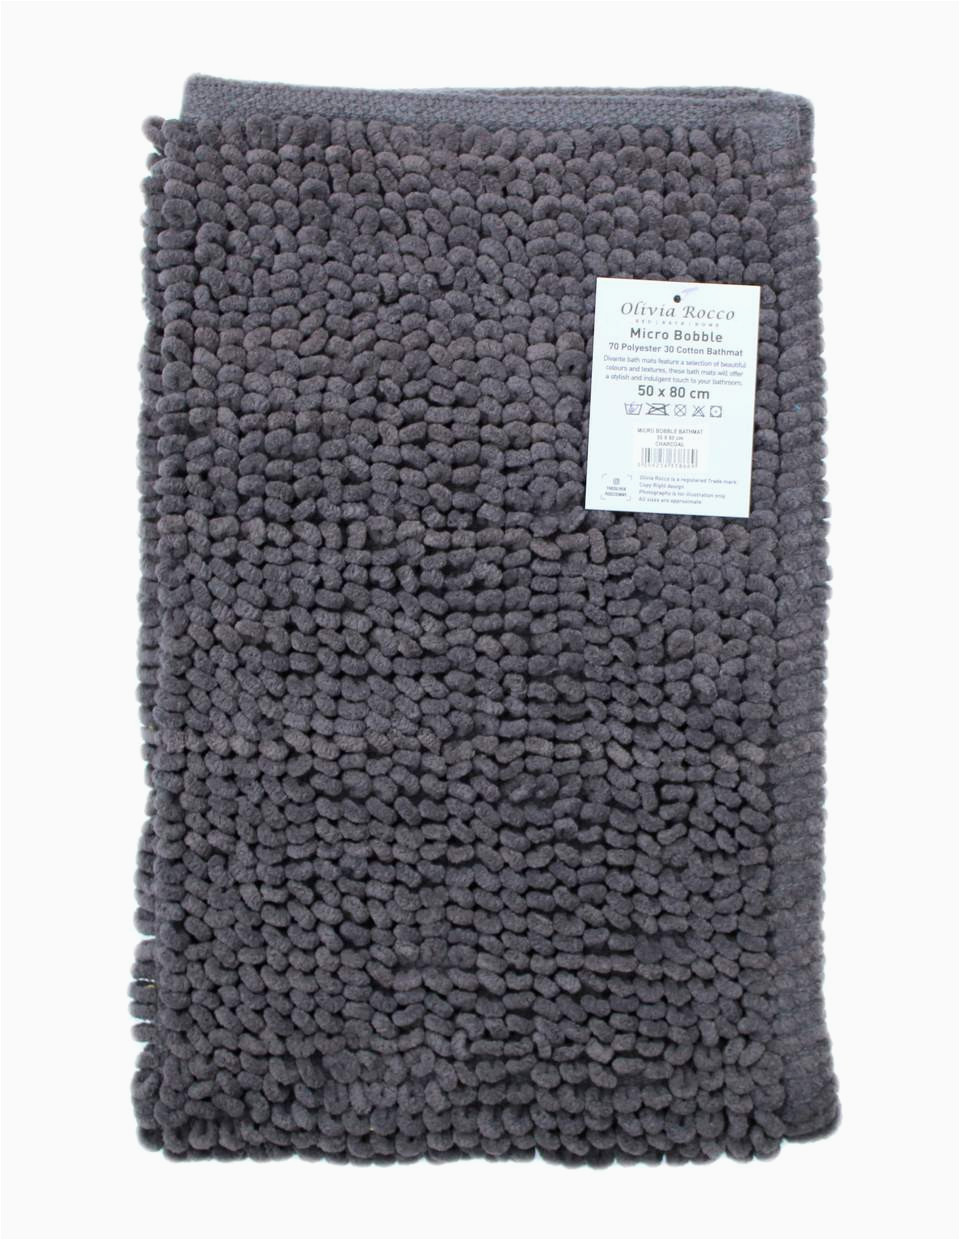 pebbles micro bobble bath mat home decor bedroom bathroom essentials 18009112051784 960x